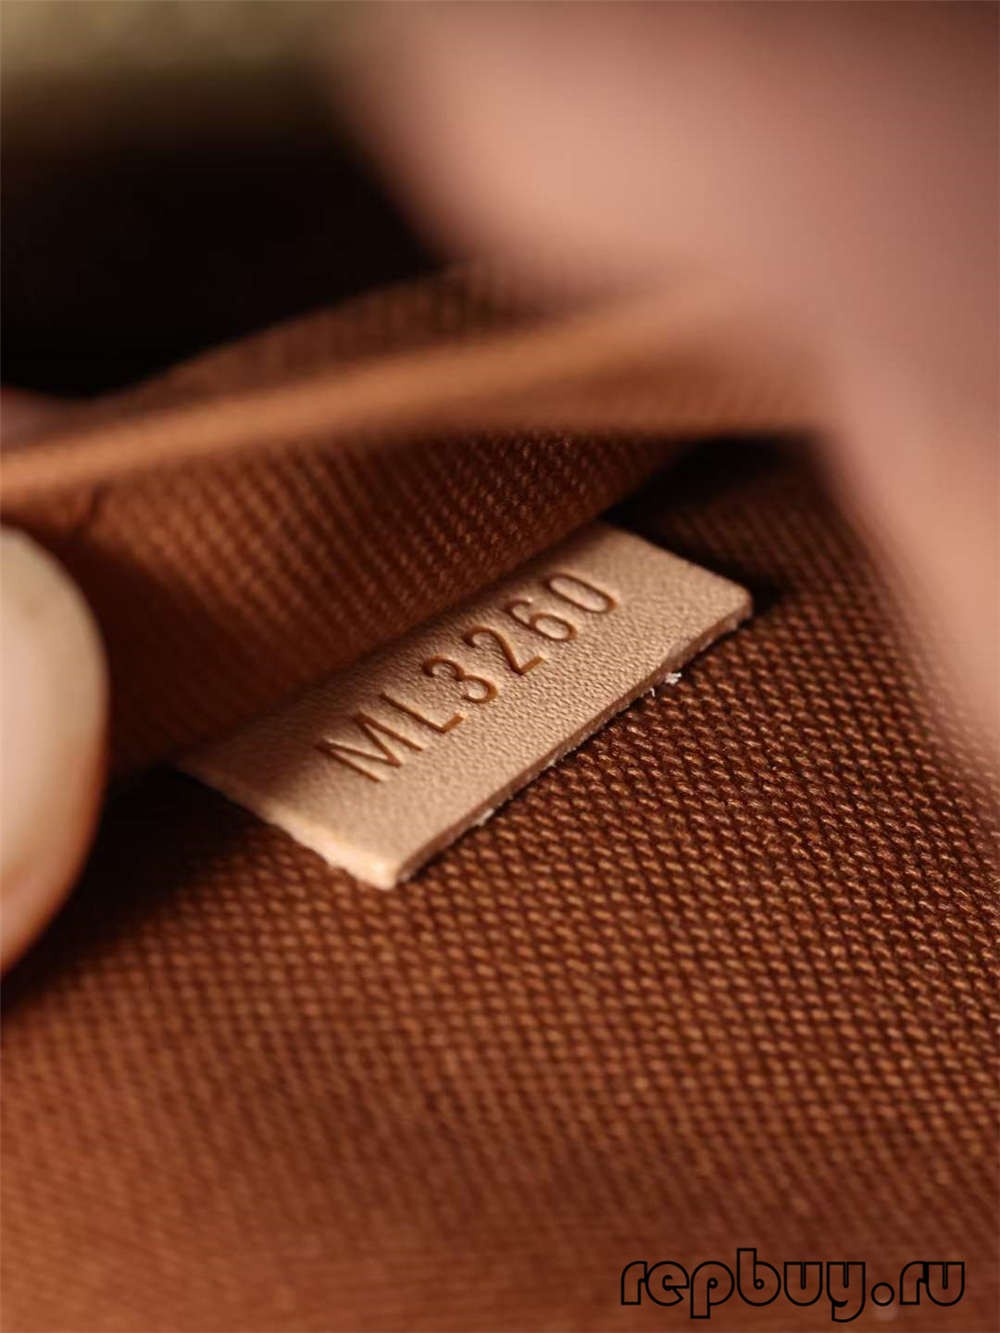 Louis Vuitton M53152 Alma BB top quality replica bags (2022 Special)-Best Quality Fake designer Bag Review, Replica designer bag ru